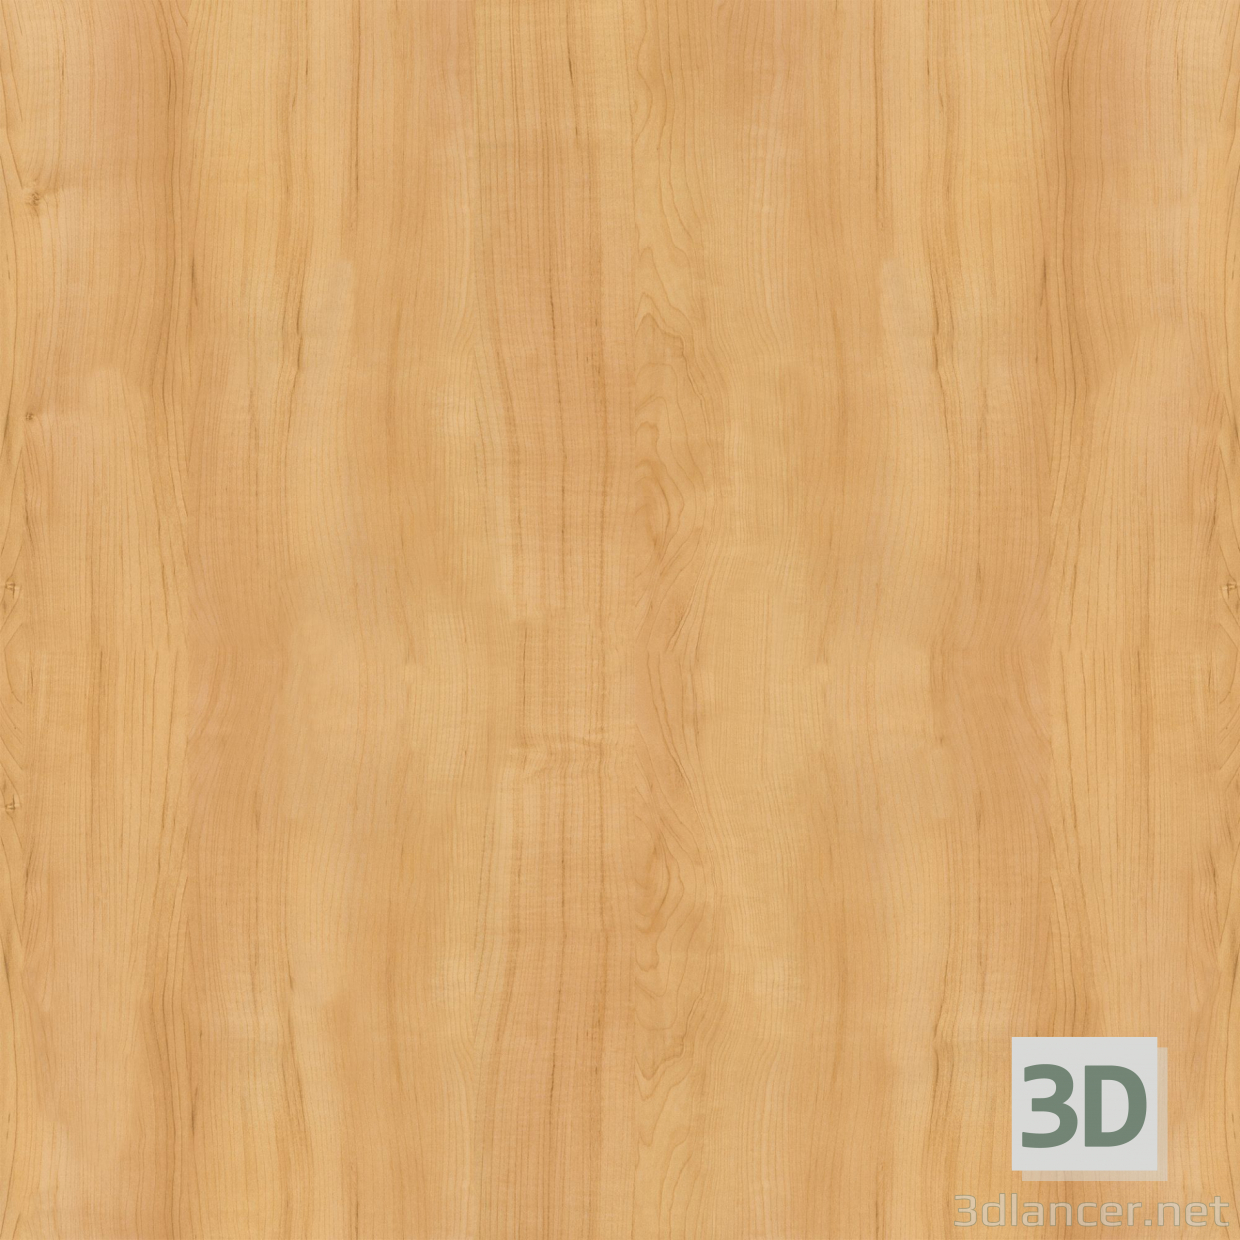 Descarga gratuita de textura madera - imagen